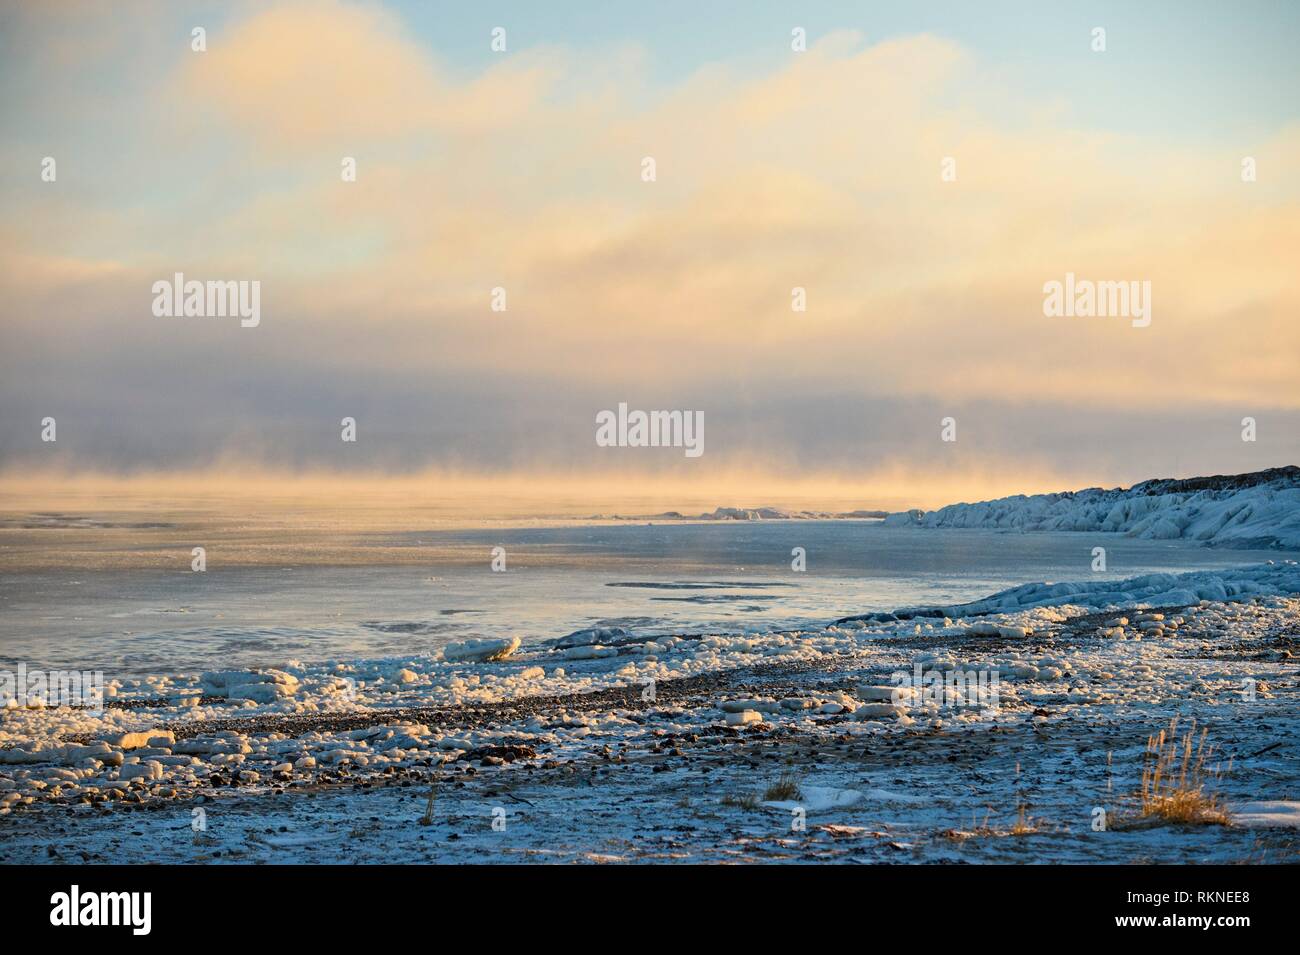 Le littoral de la Baie d'Hudson au moment du gel, Churchill, Manitoba, Canada. Banque D'Images